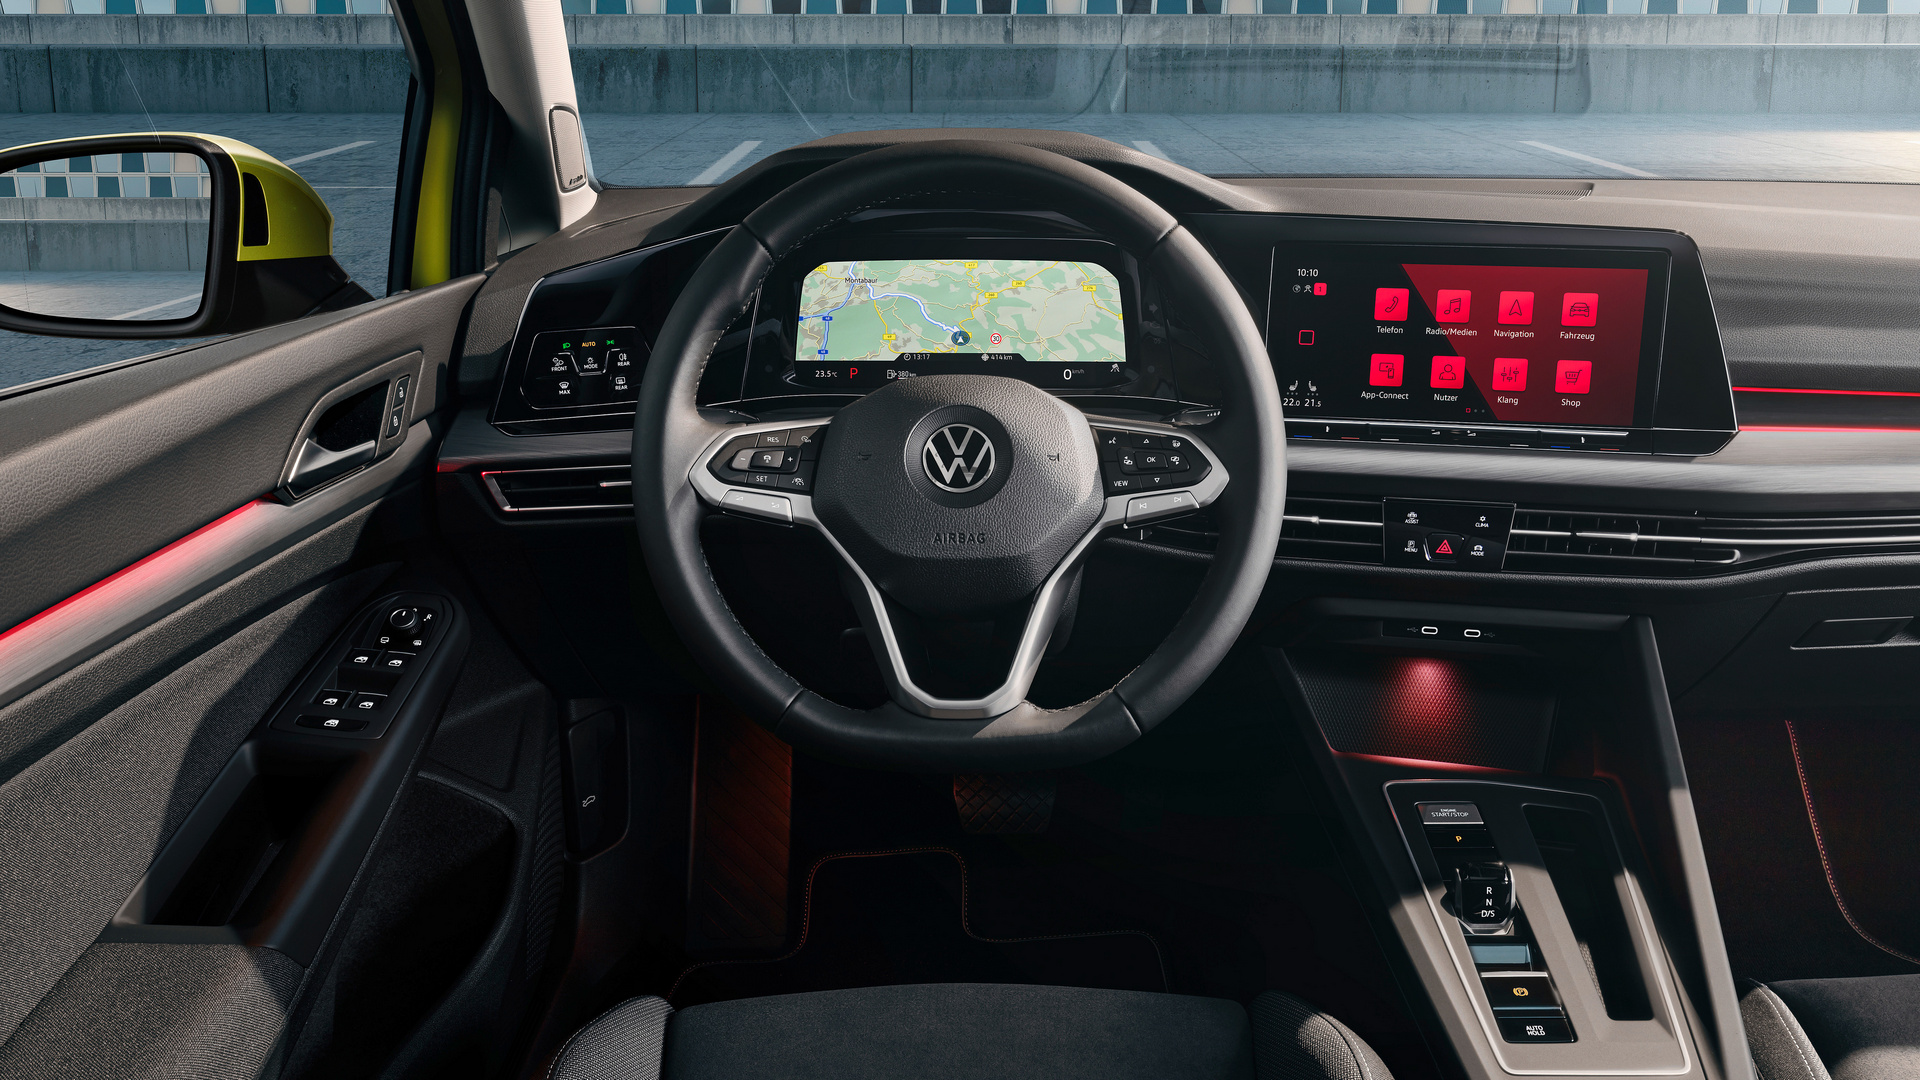 VW lässt es leuchten: Lichtdesign statt Chrom als emotionaler Style-Faktor  -  News